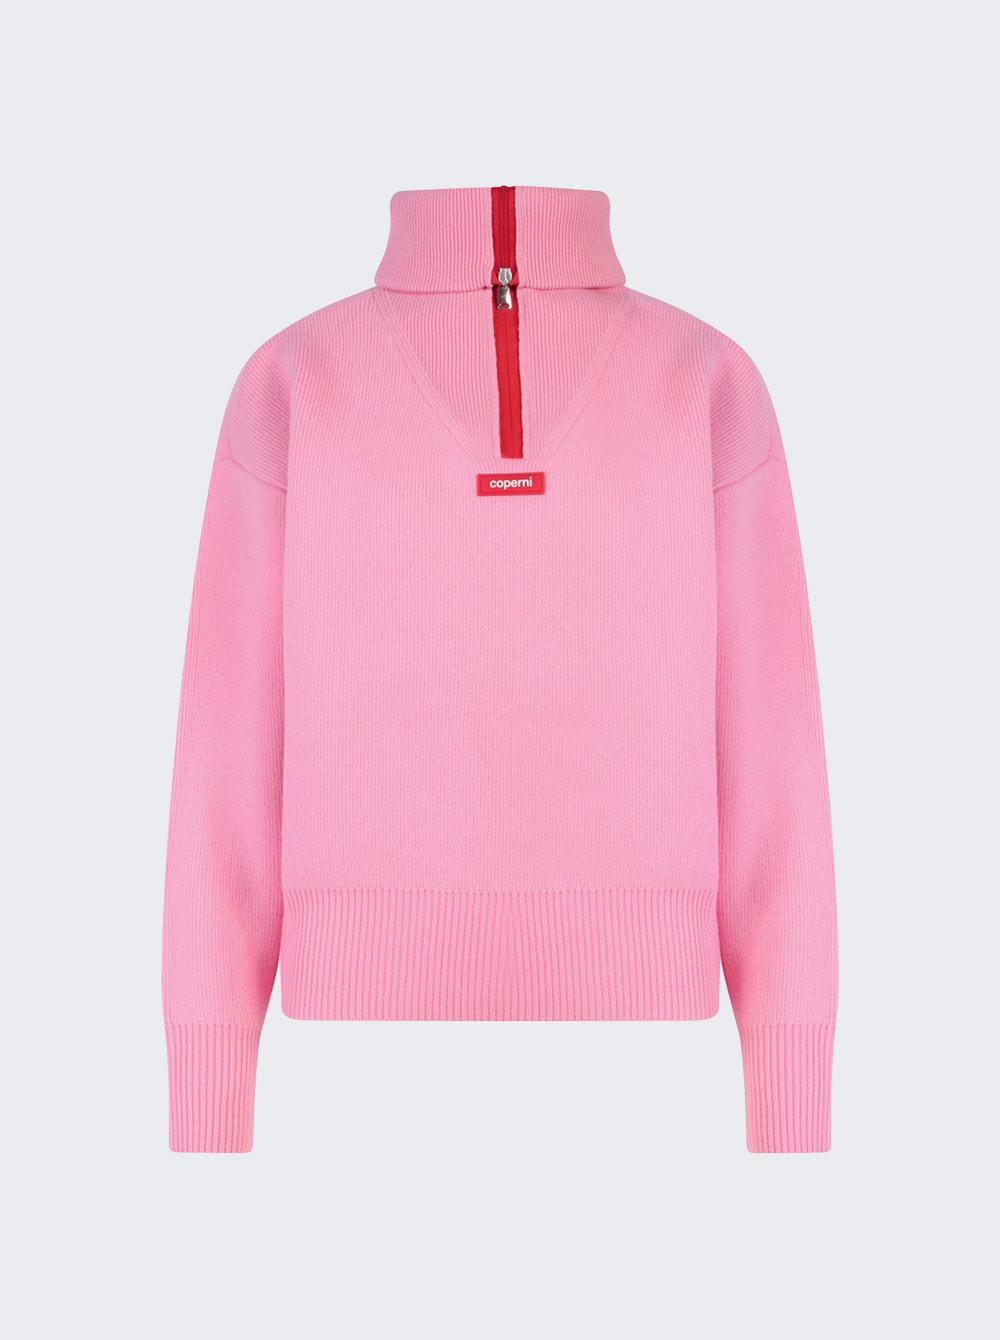 Half-zip Boxy Sweater Pink by COPERNI